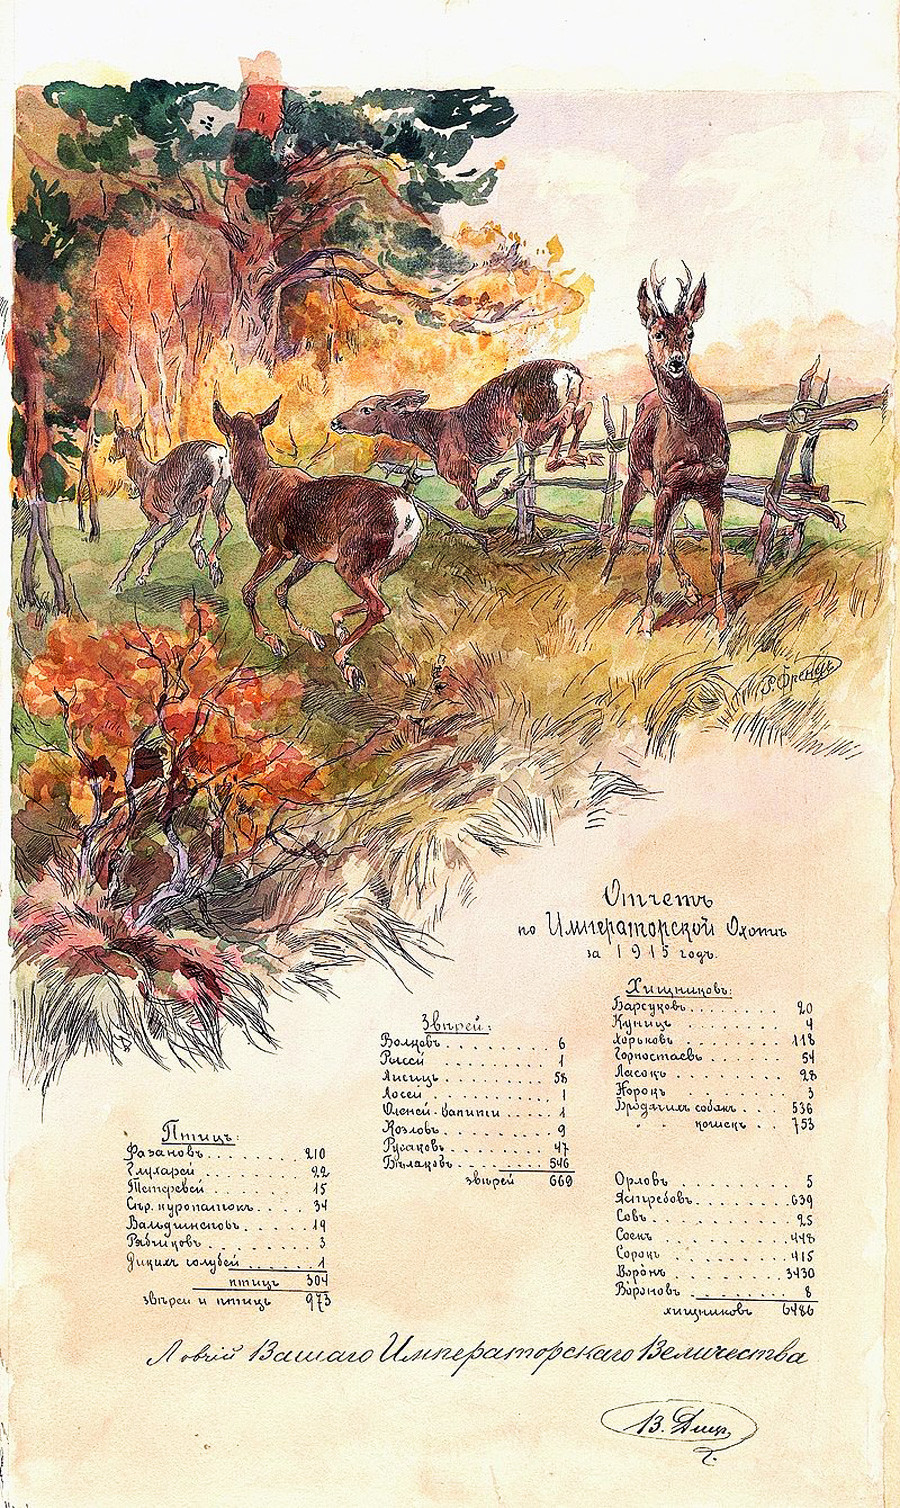 Aquarela apresenta os resultados de uma caça da realeza, 1915